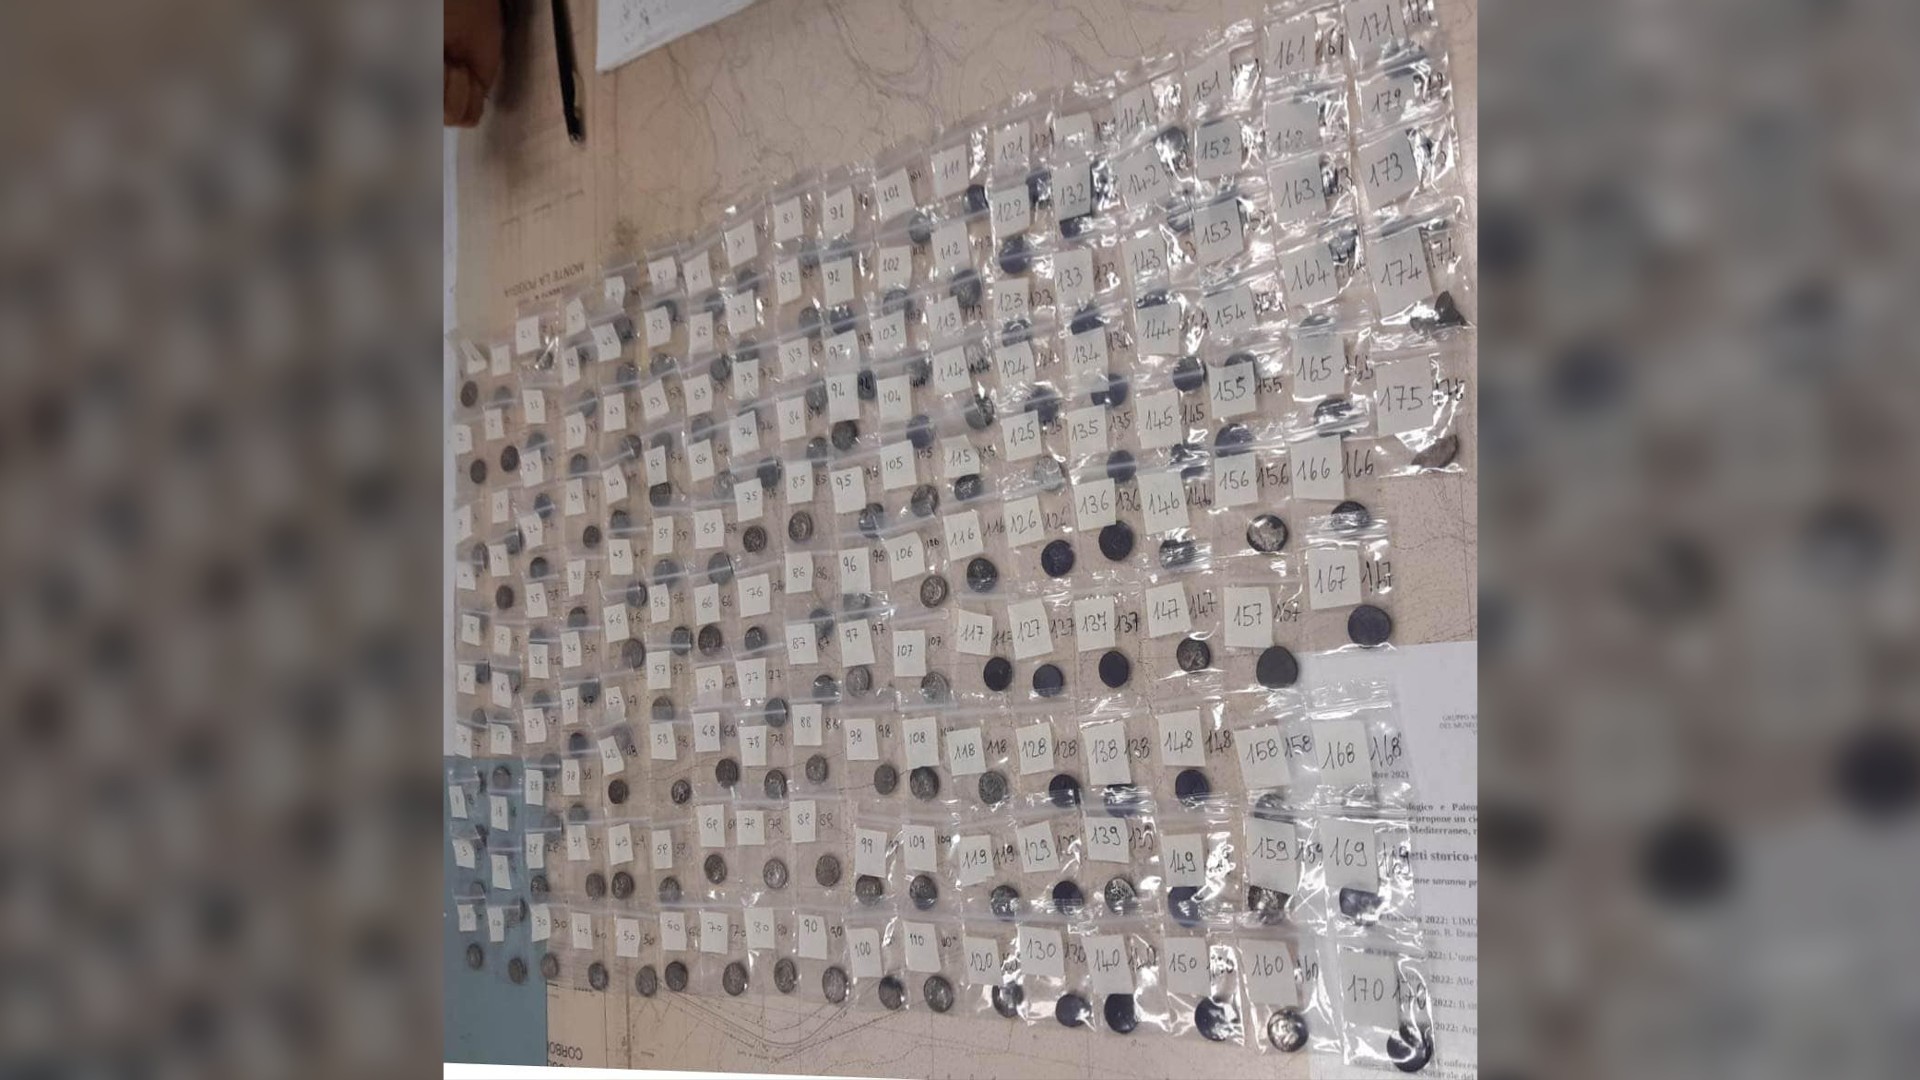 Hier sehen wir über 100 gefundene Münzen, alle verpackt und nummeriert.